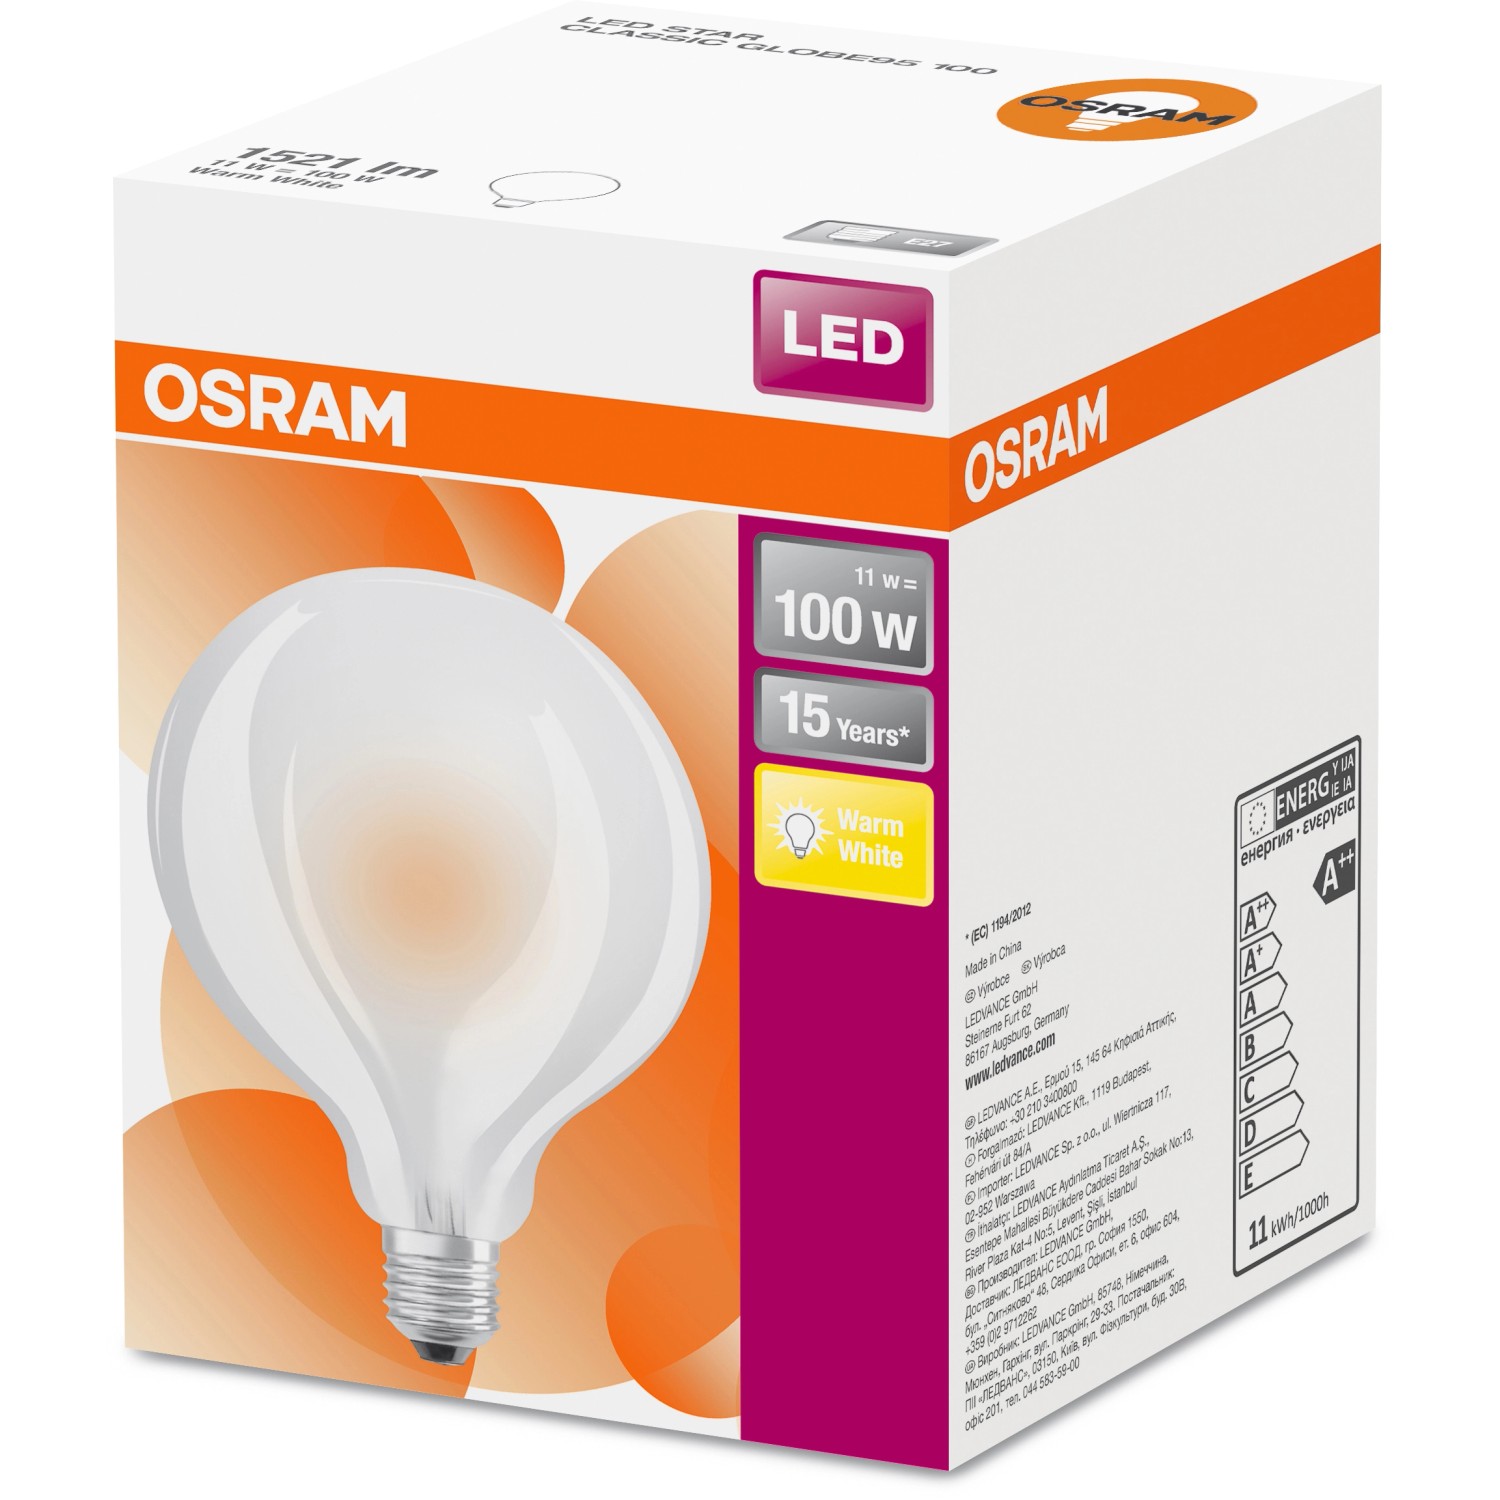 Osram LED-Leuchtmittel E27 Globeform 11 W Warmweiß 1521 lm 13,5 x 9,5 cm (H x Ø)